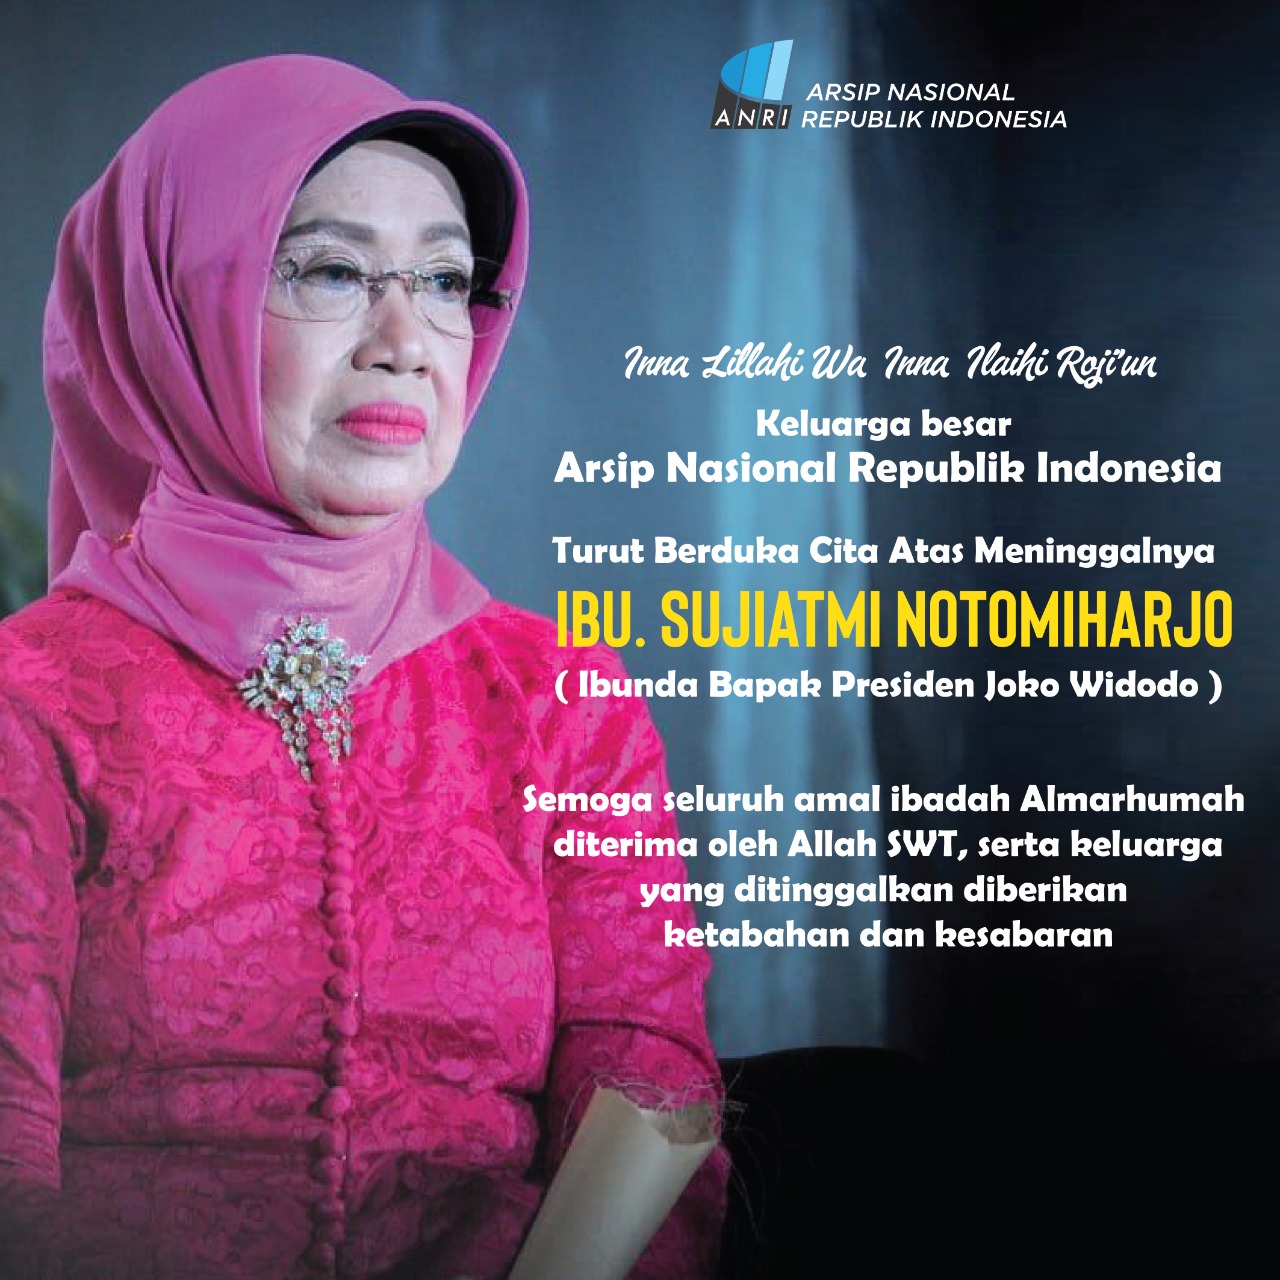 Keluarga Besar Arsip Nasional RI Turut Berduka Cita atas Berpulangnya Ibu Sujiatmi Notomiharjo (Ibunda Presiden RI, Bapak Joko Widodo